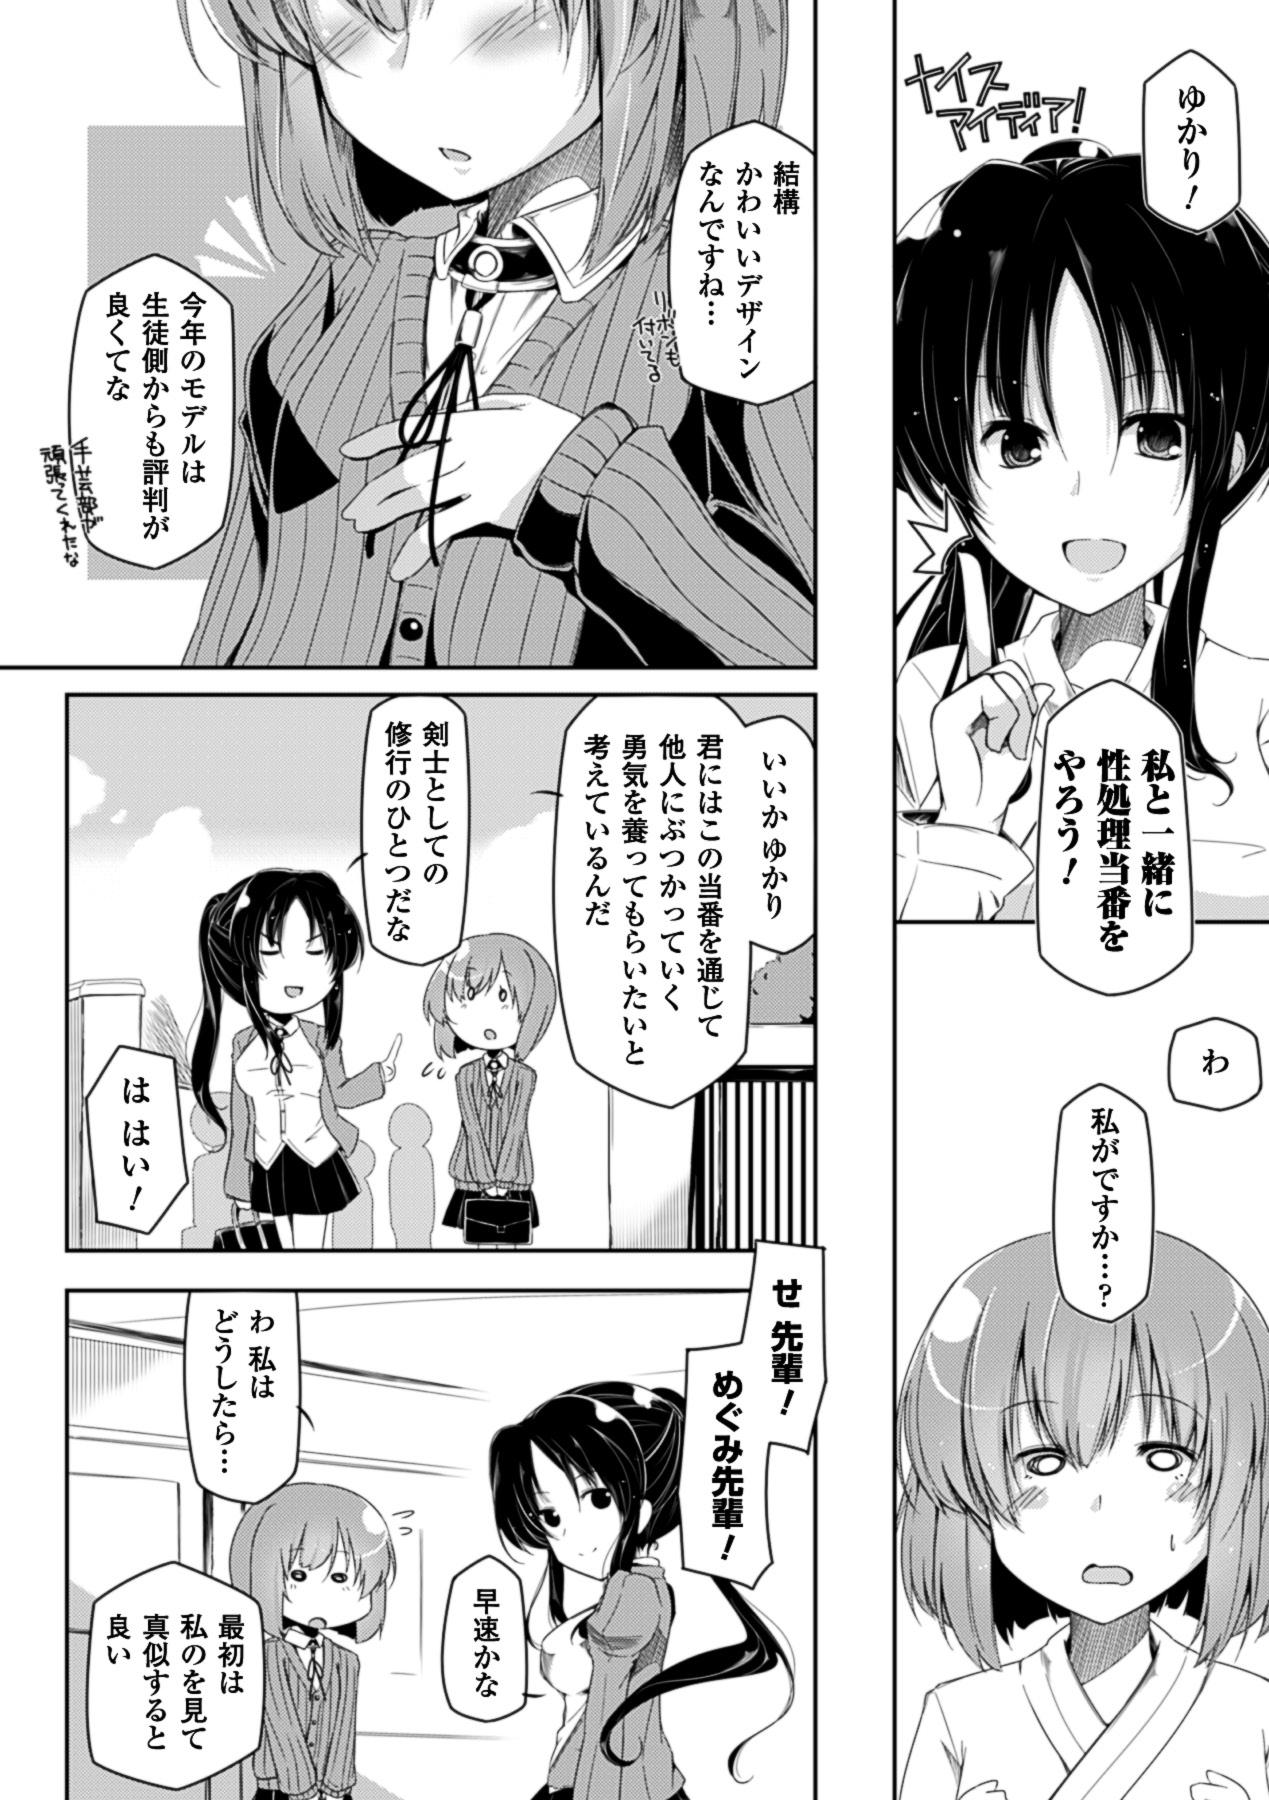 First Bessatsu Comic Unreal - Joushiki ga Eroi Ijou na Sekai Vol. 2 Pussy Lick - Page 6